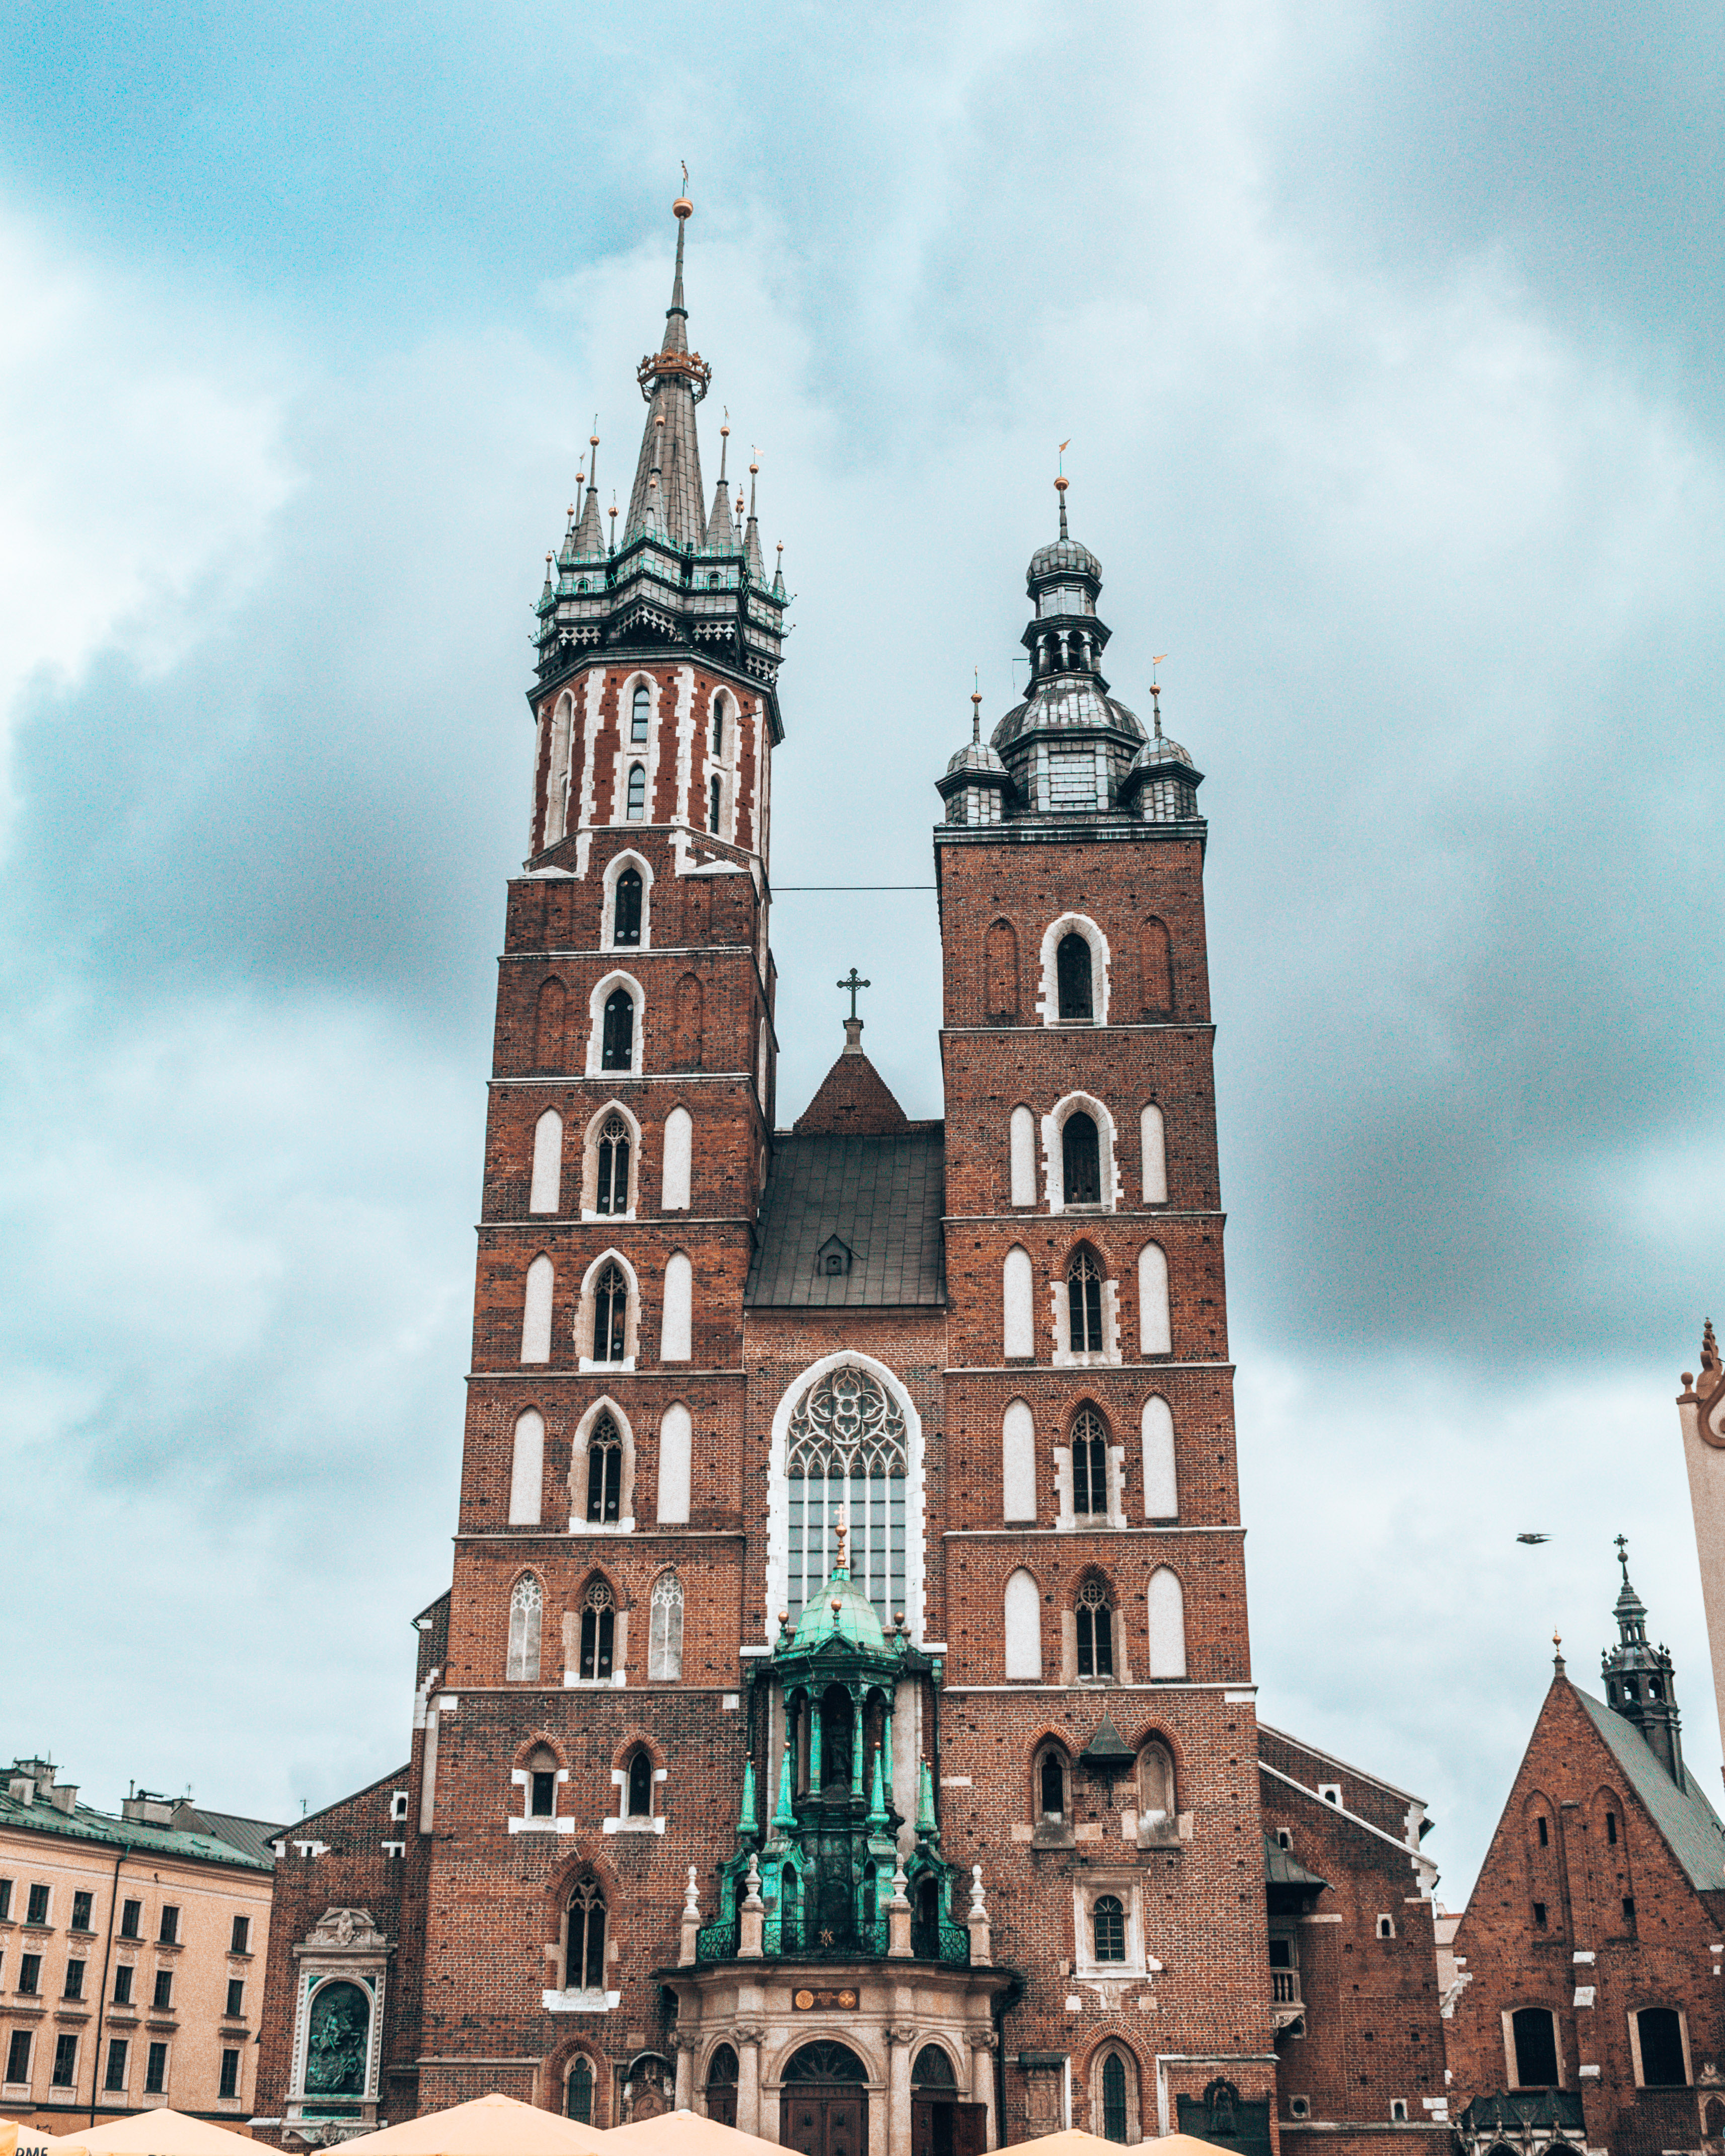 St Mary's Basilica in Krakow, Poland